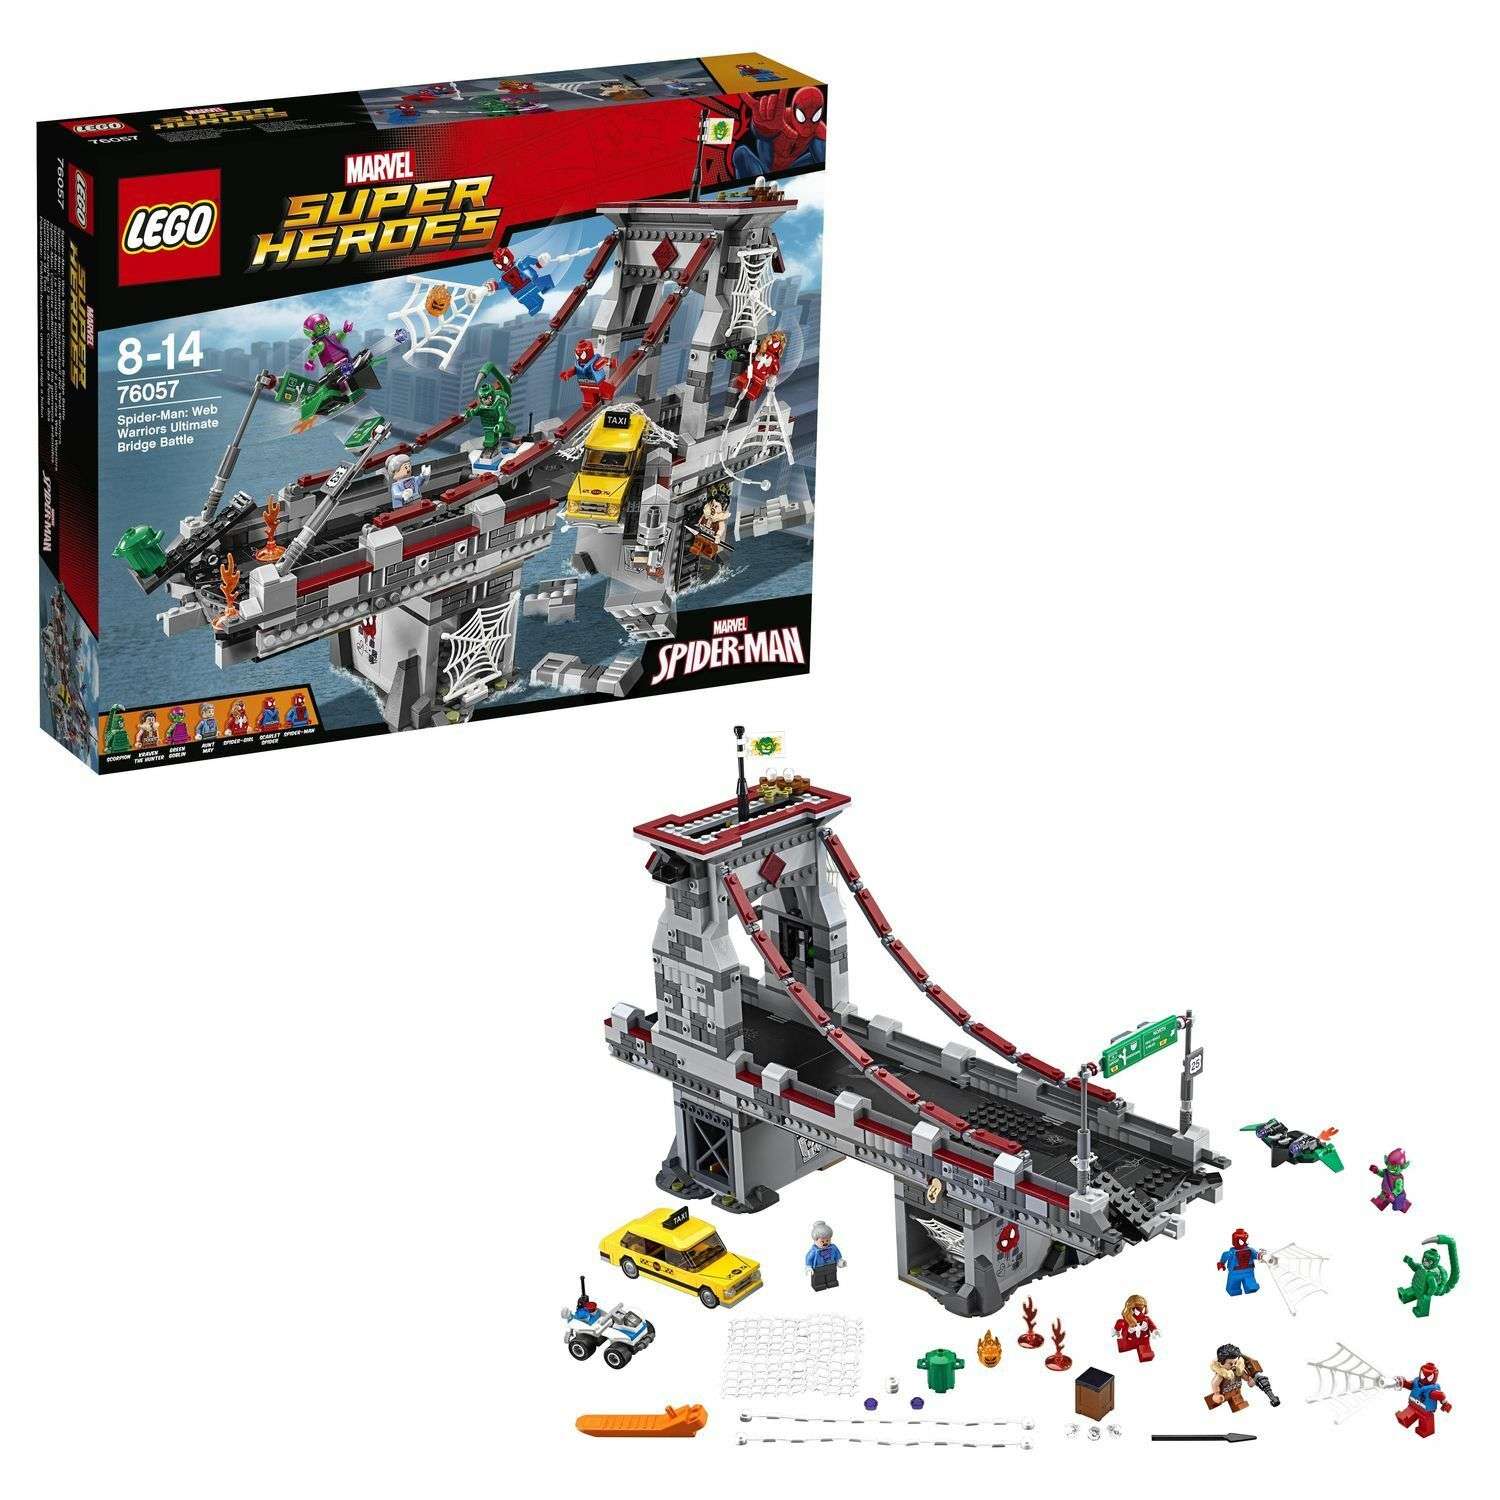 Конструктор LEGO Super Heroes Человек-паук:последний бой воинов паутины (76057) - фото 1